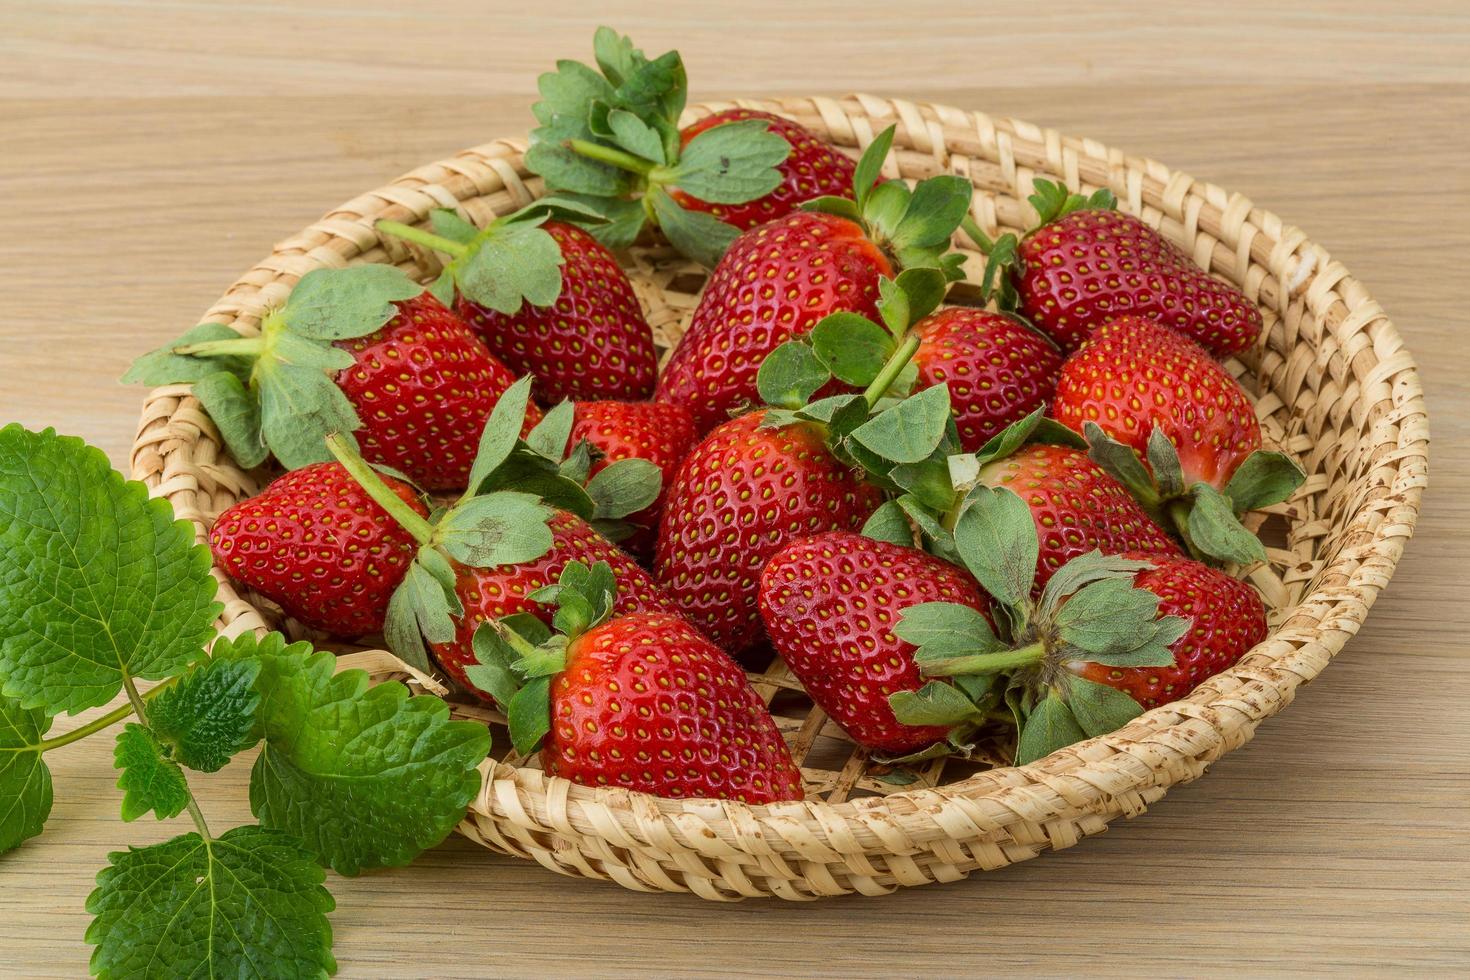 Fresh strawberry on wood photo